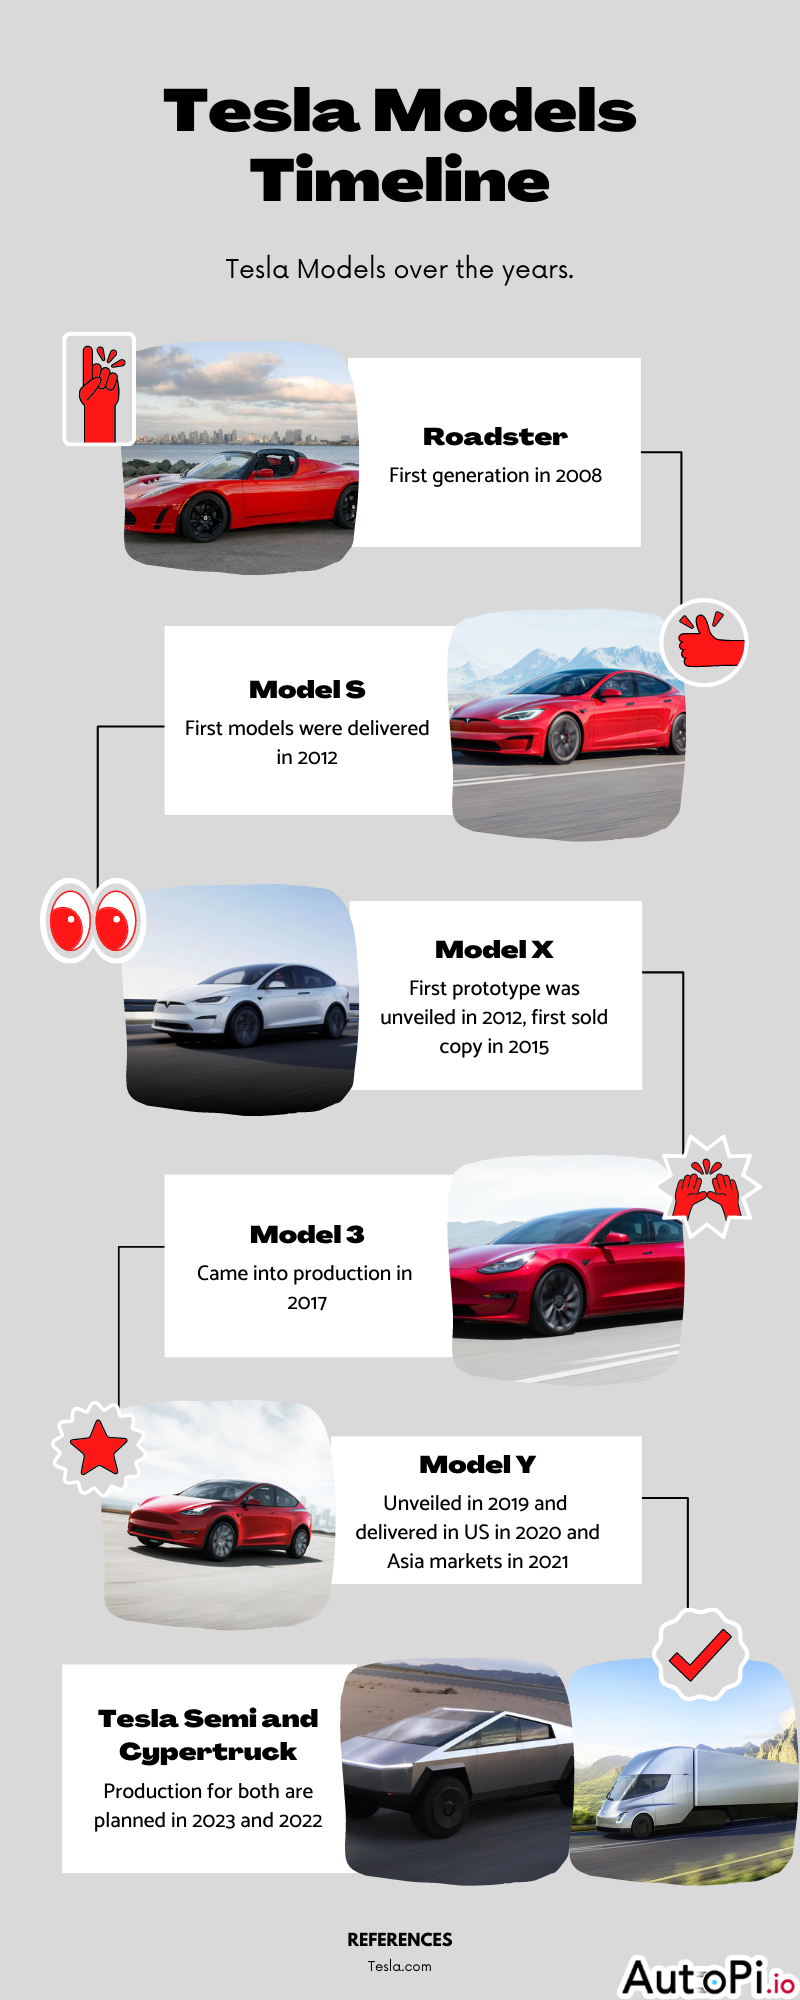 A timeline of the different Tesla car models